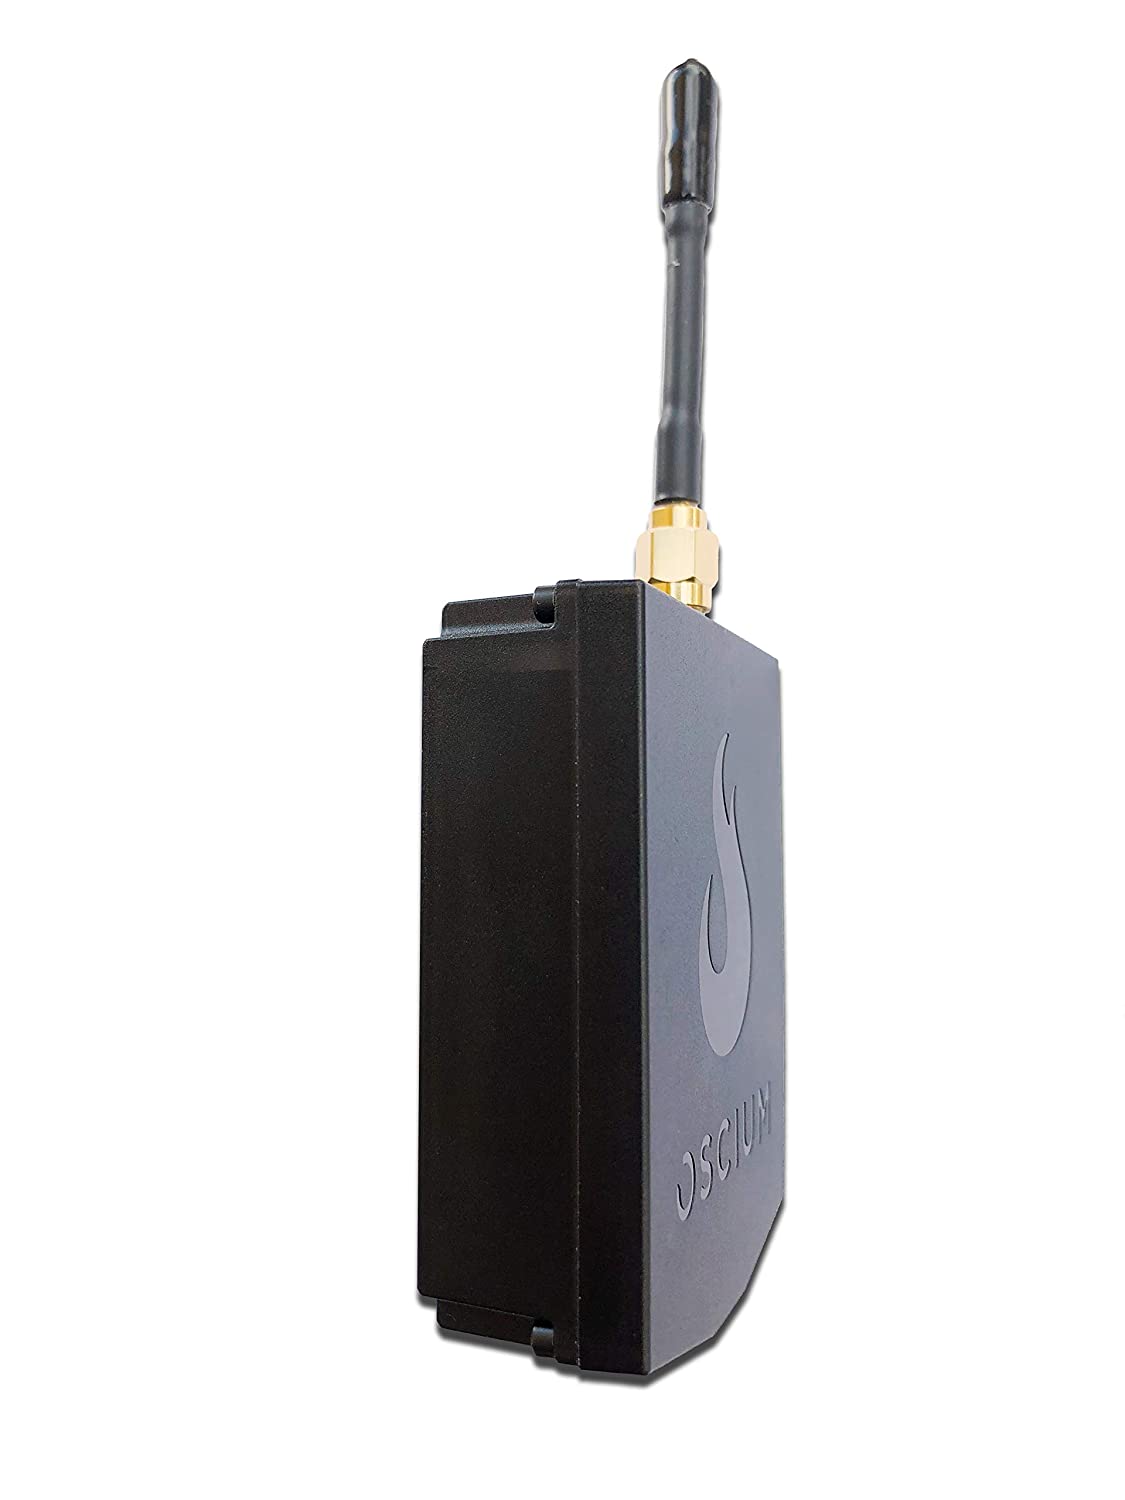 OSCIUM WiPry 2500x: Analizador de espectro Wi-Fi, 2,4 y 5 GHz, Soporte universal de plataforma (incluyendo iOS, Android, PC, Mac), portátil, informes avanzados, sin suscripción de software